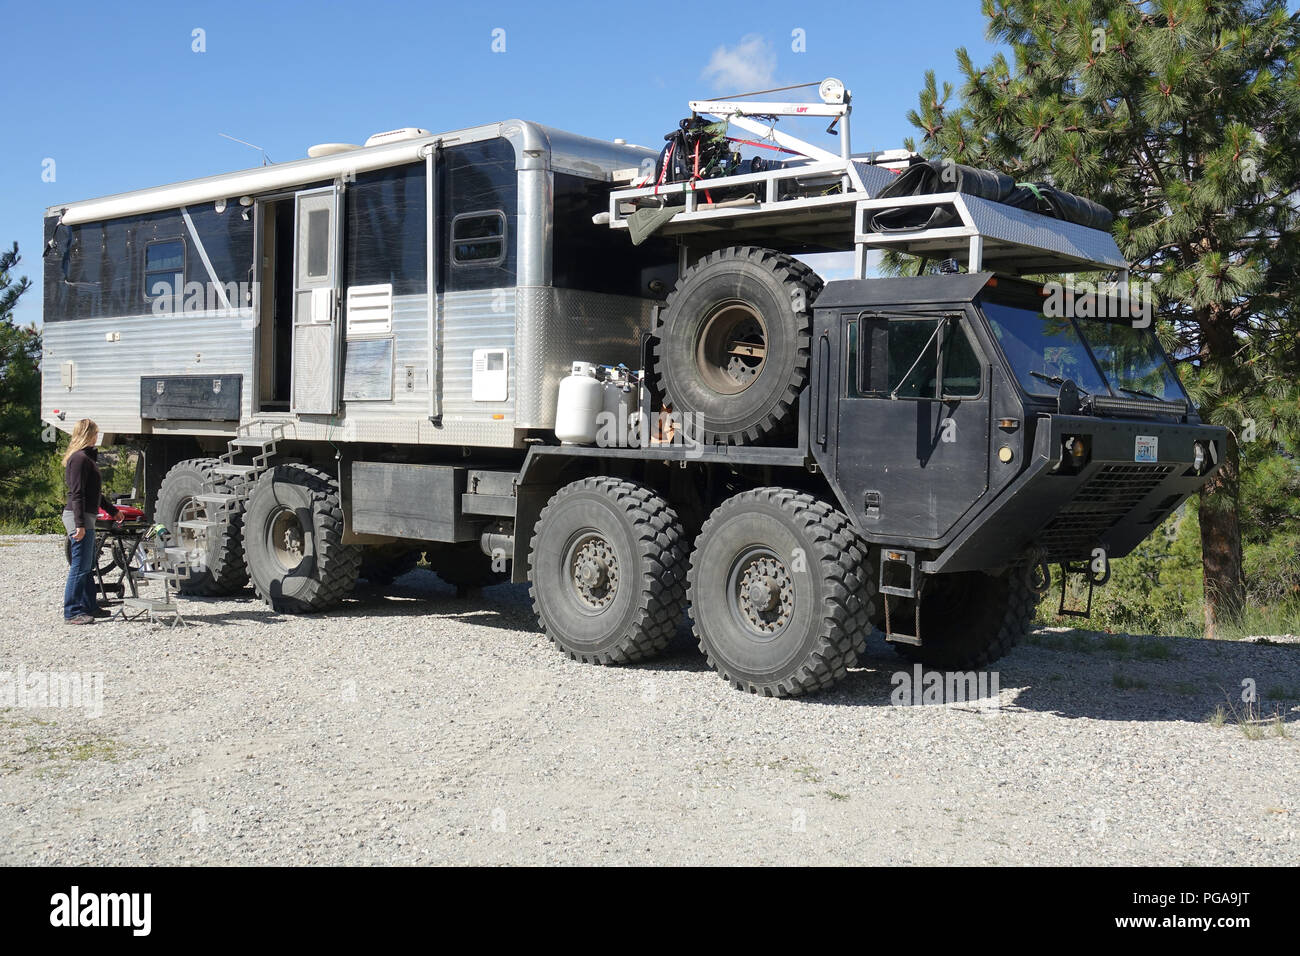 Military Truck Camper | vlr.eng.br